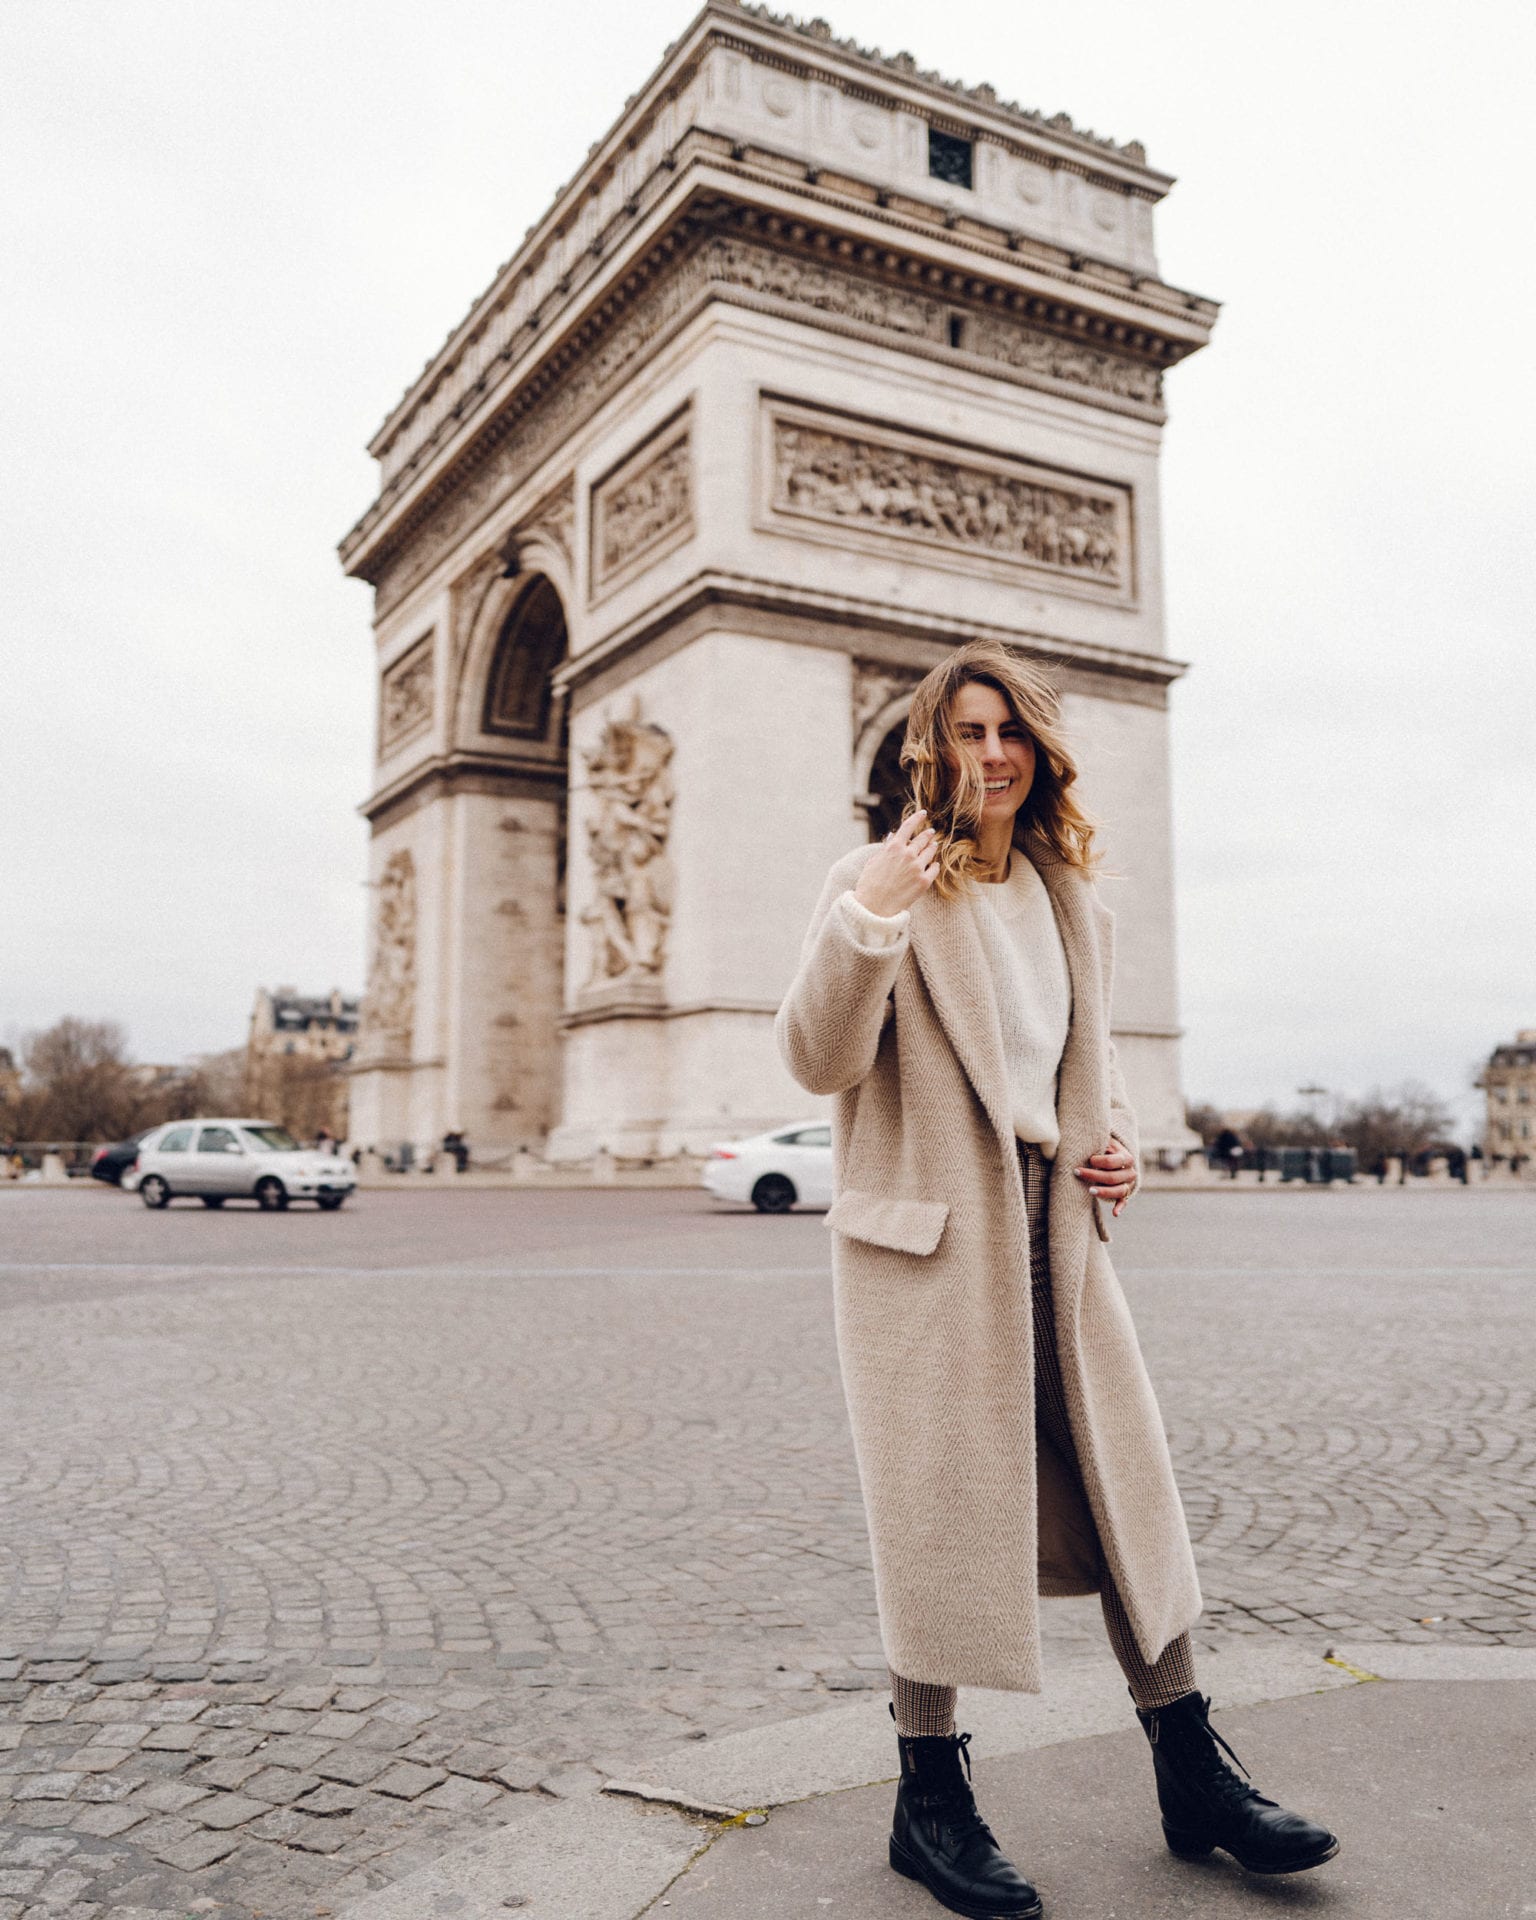 Arc De Triomphe in Paris via Find Us Lost